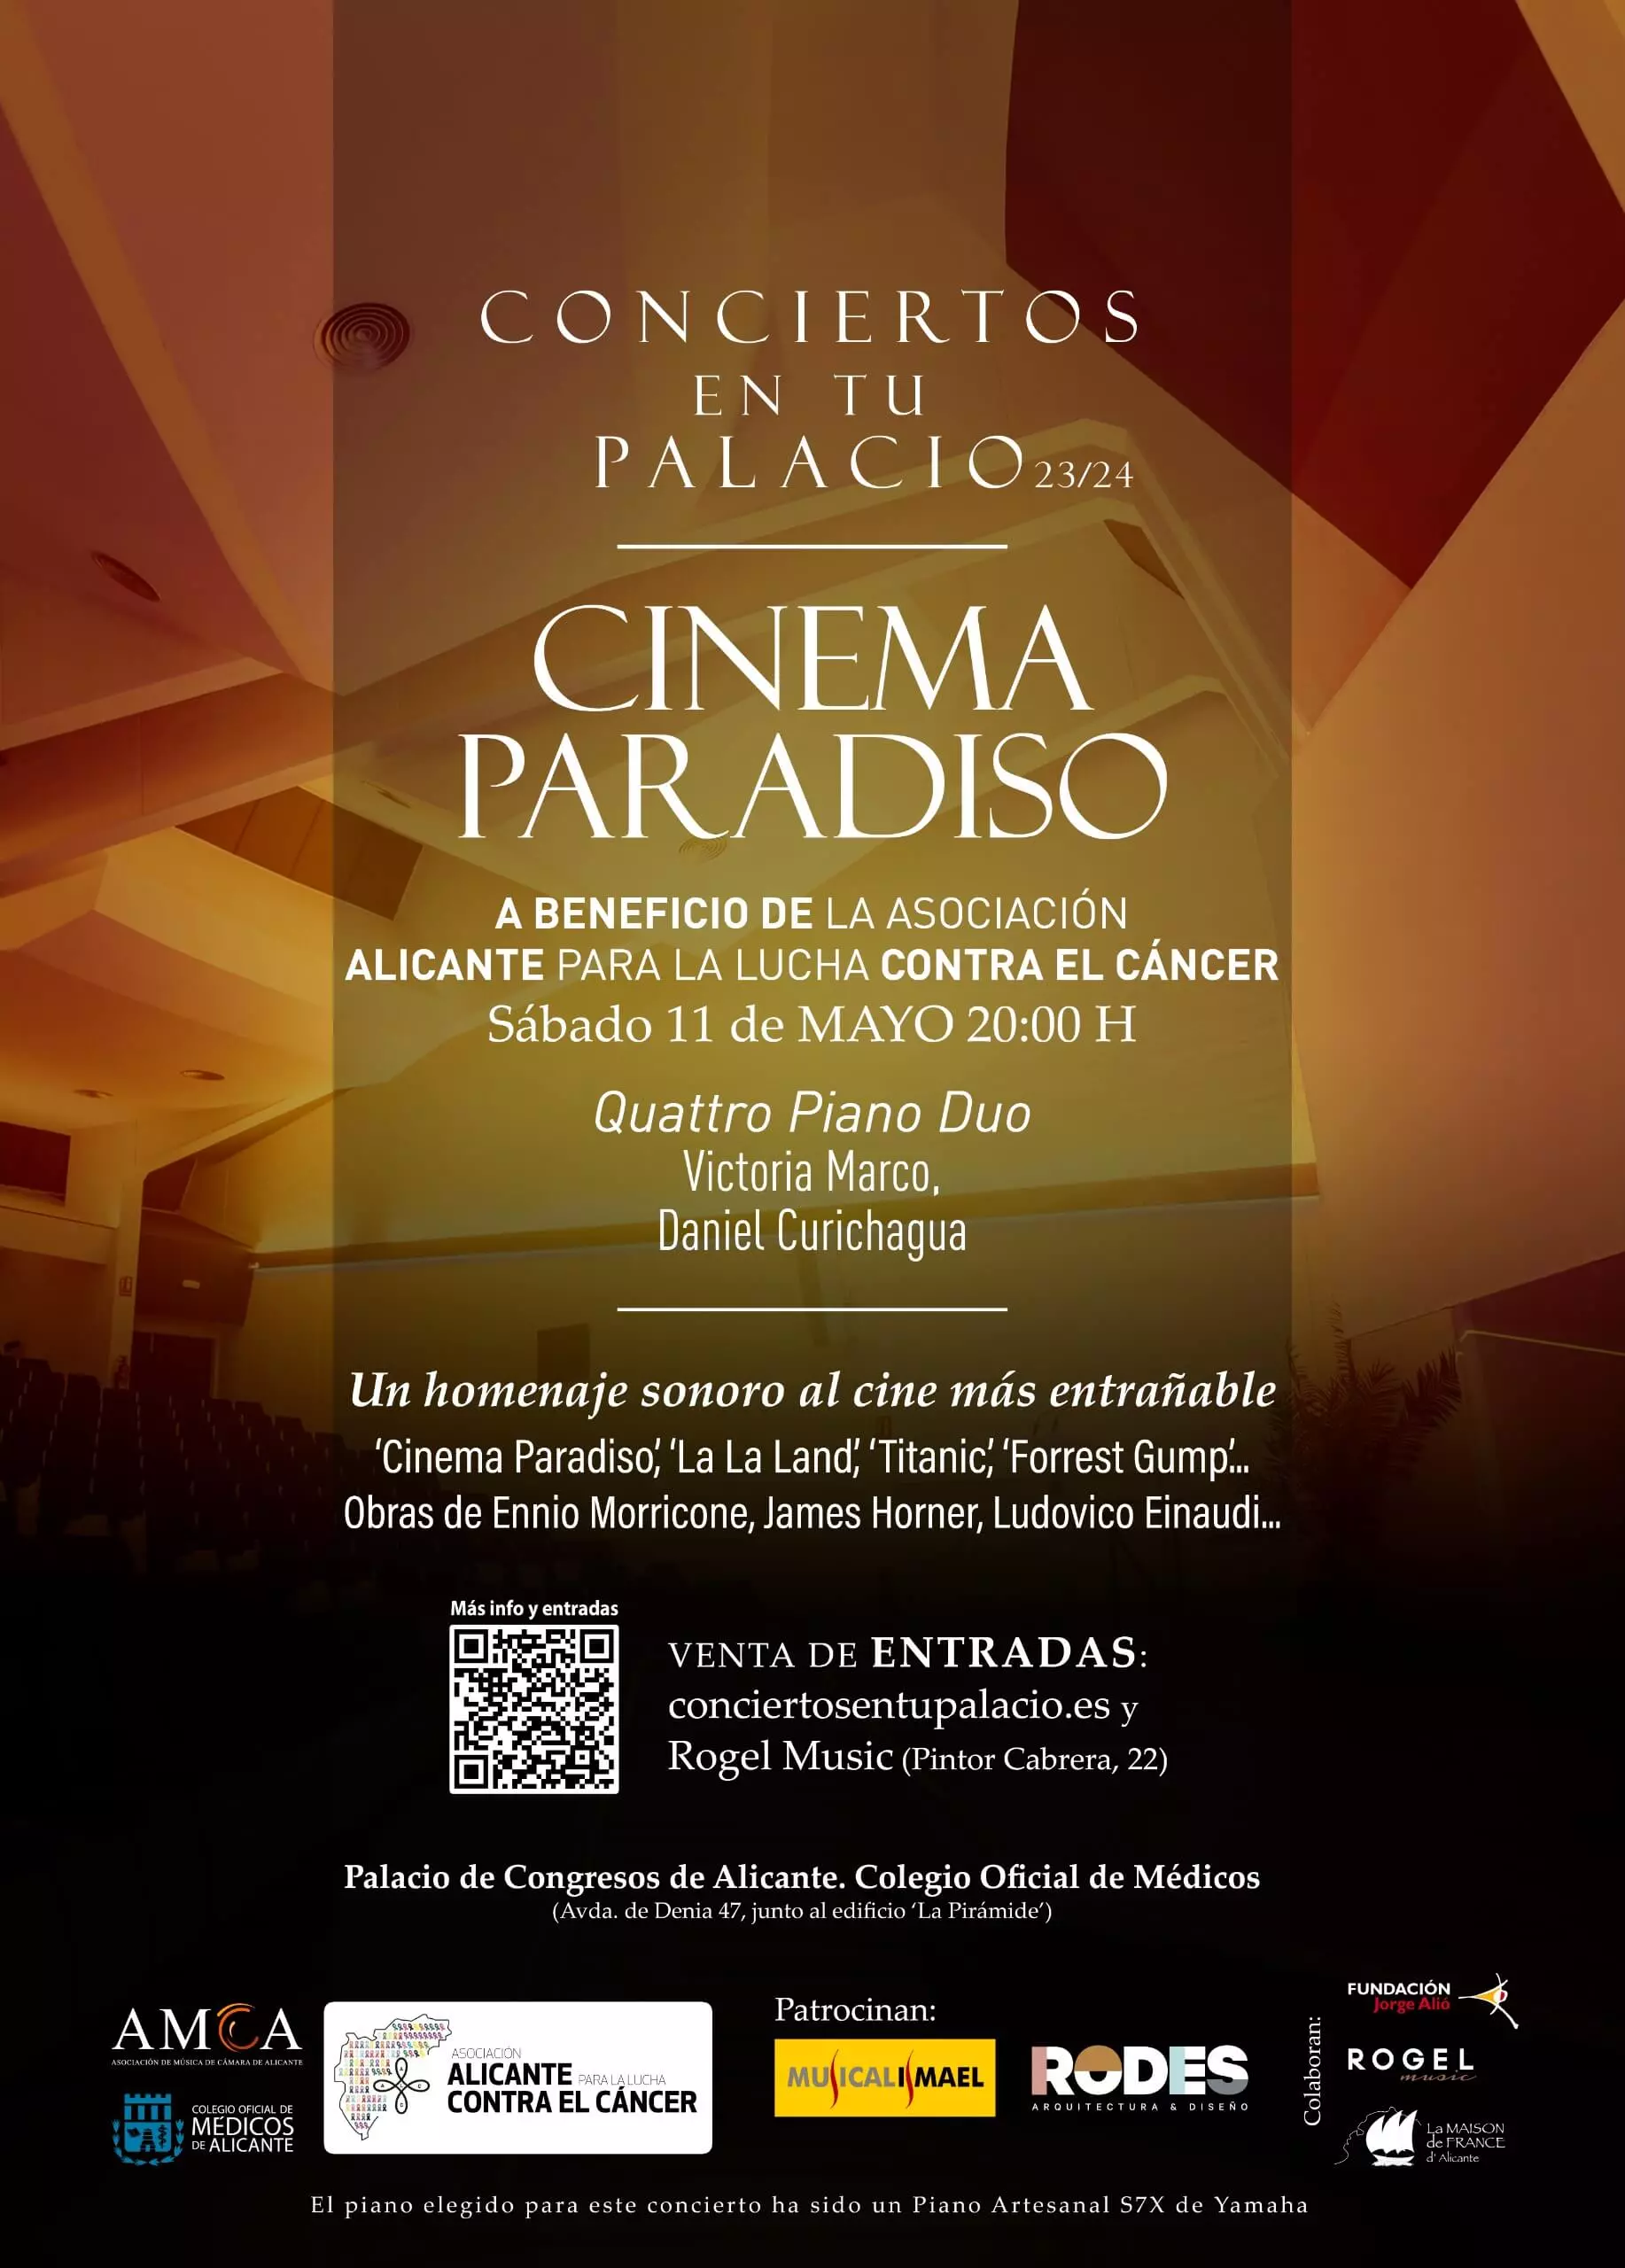 Conciertos en tu Palacio - CINEMA PARADISO